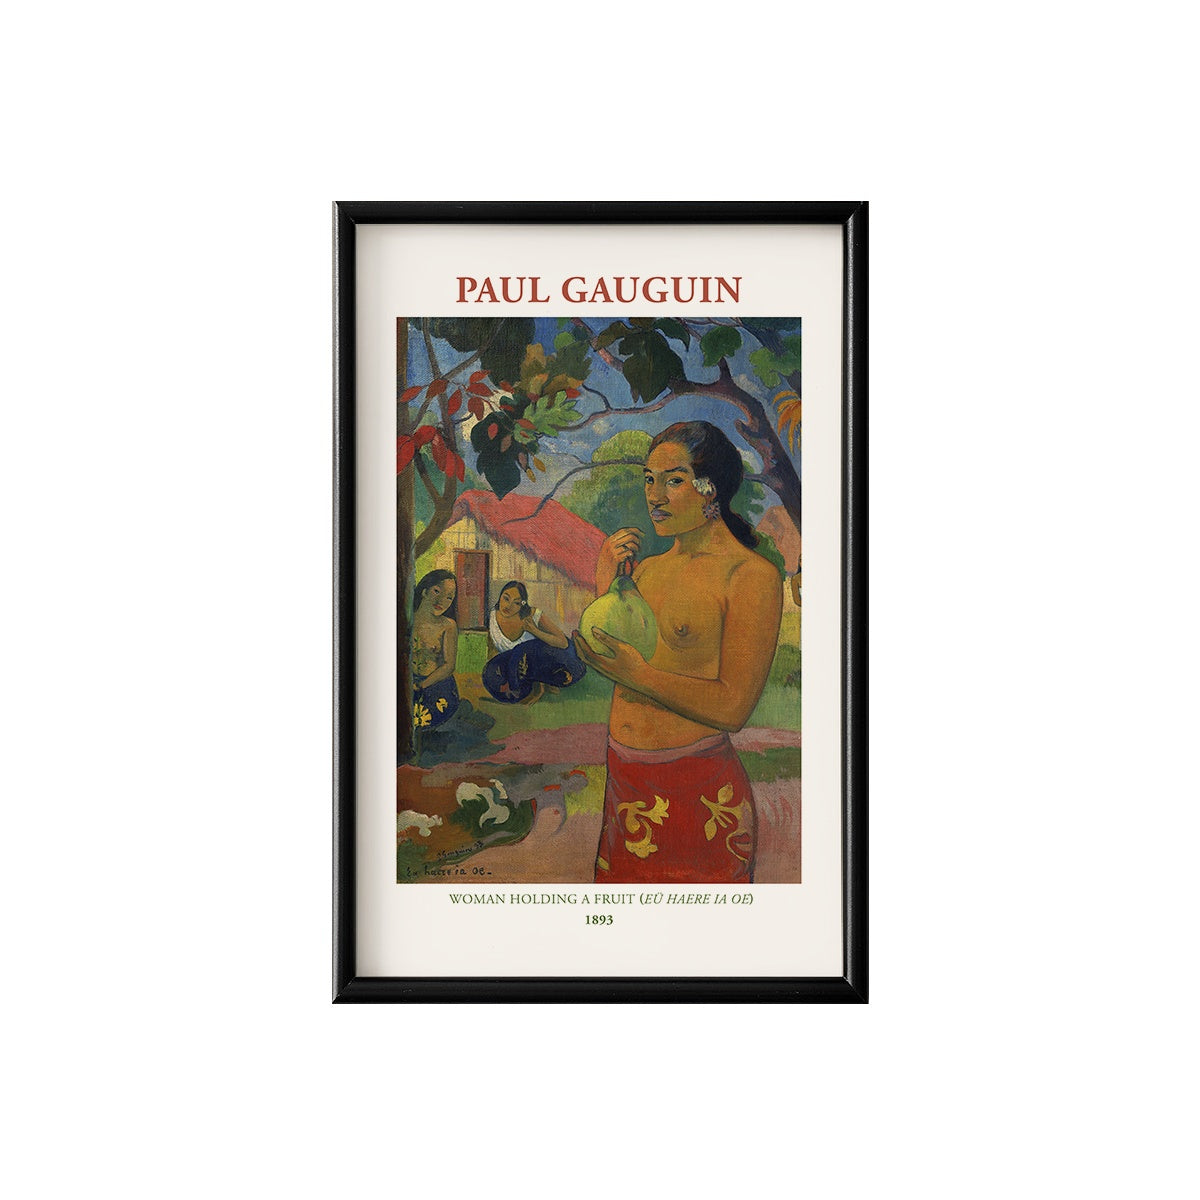 Paul Gauguin Women Holding a Fruit Poster & Framed Print